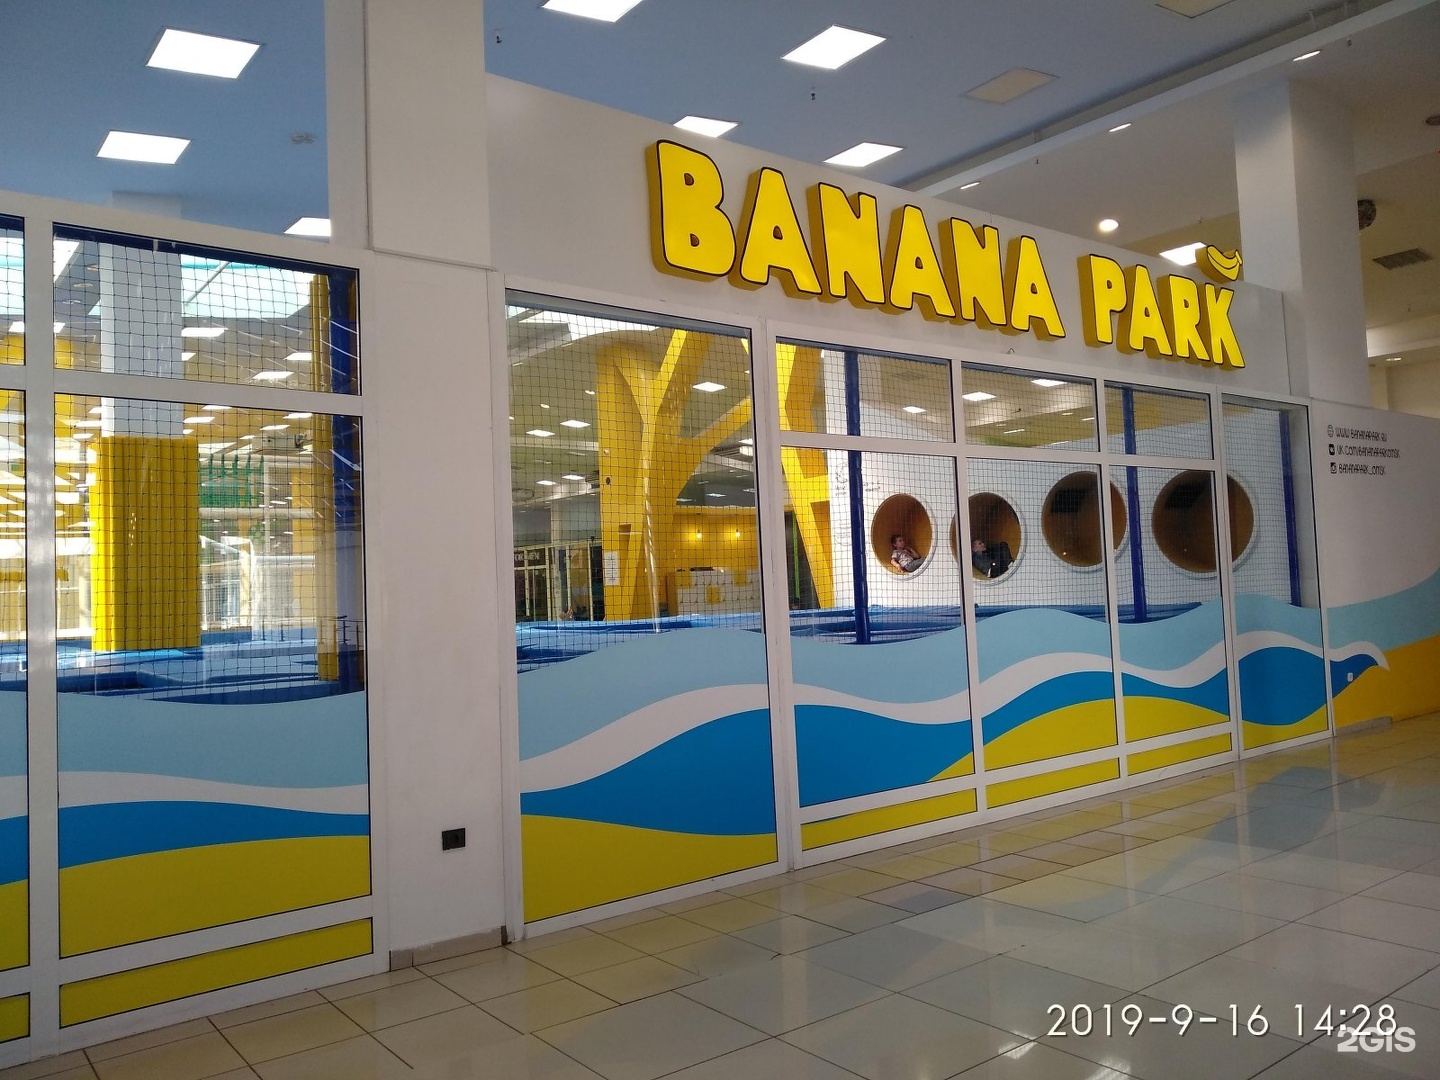 Омск банана парк